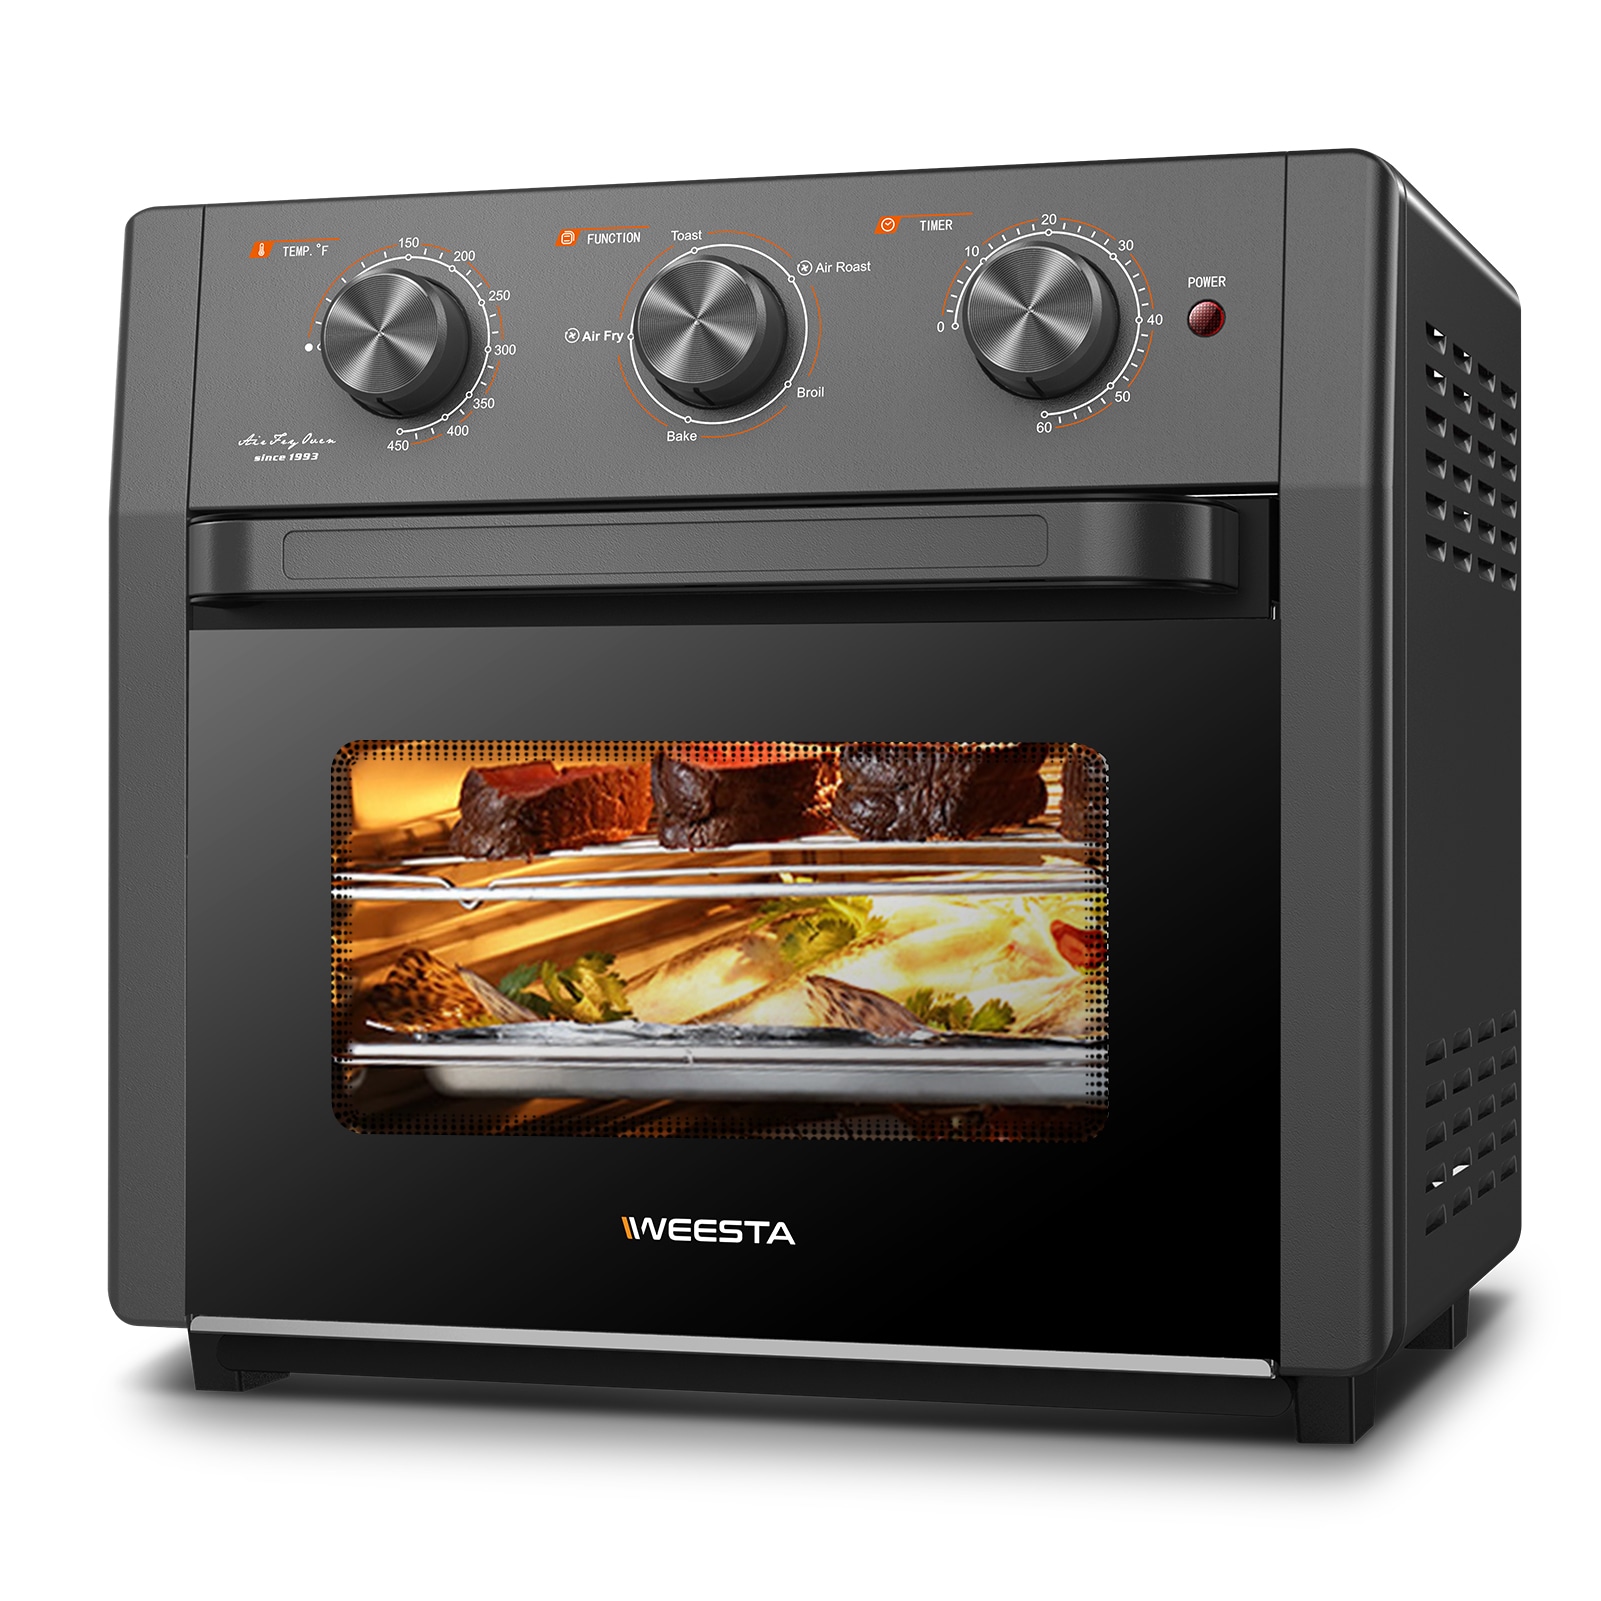 Ninja Foodi 9-Slice Black Convection Toaster Oven (1750-Watt) at